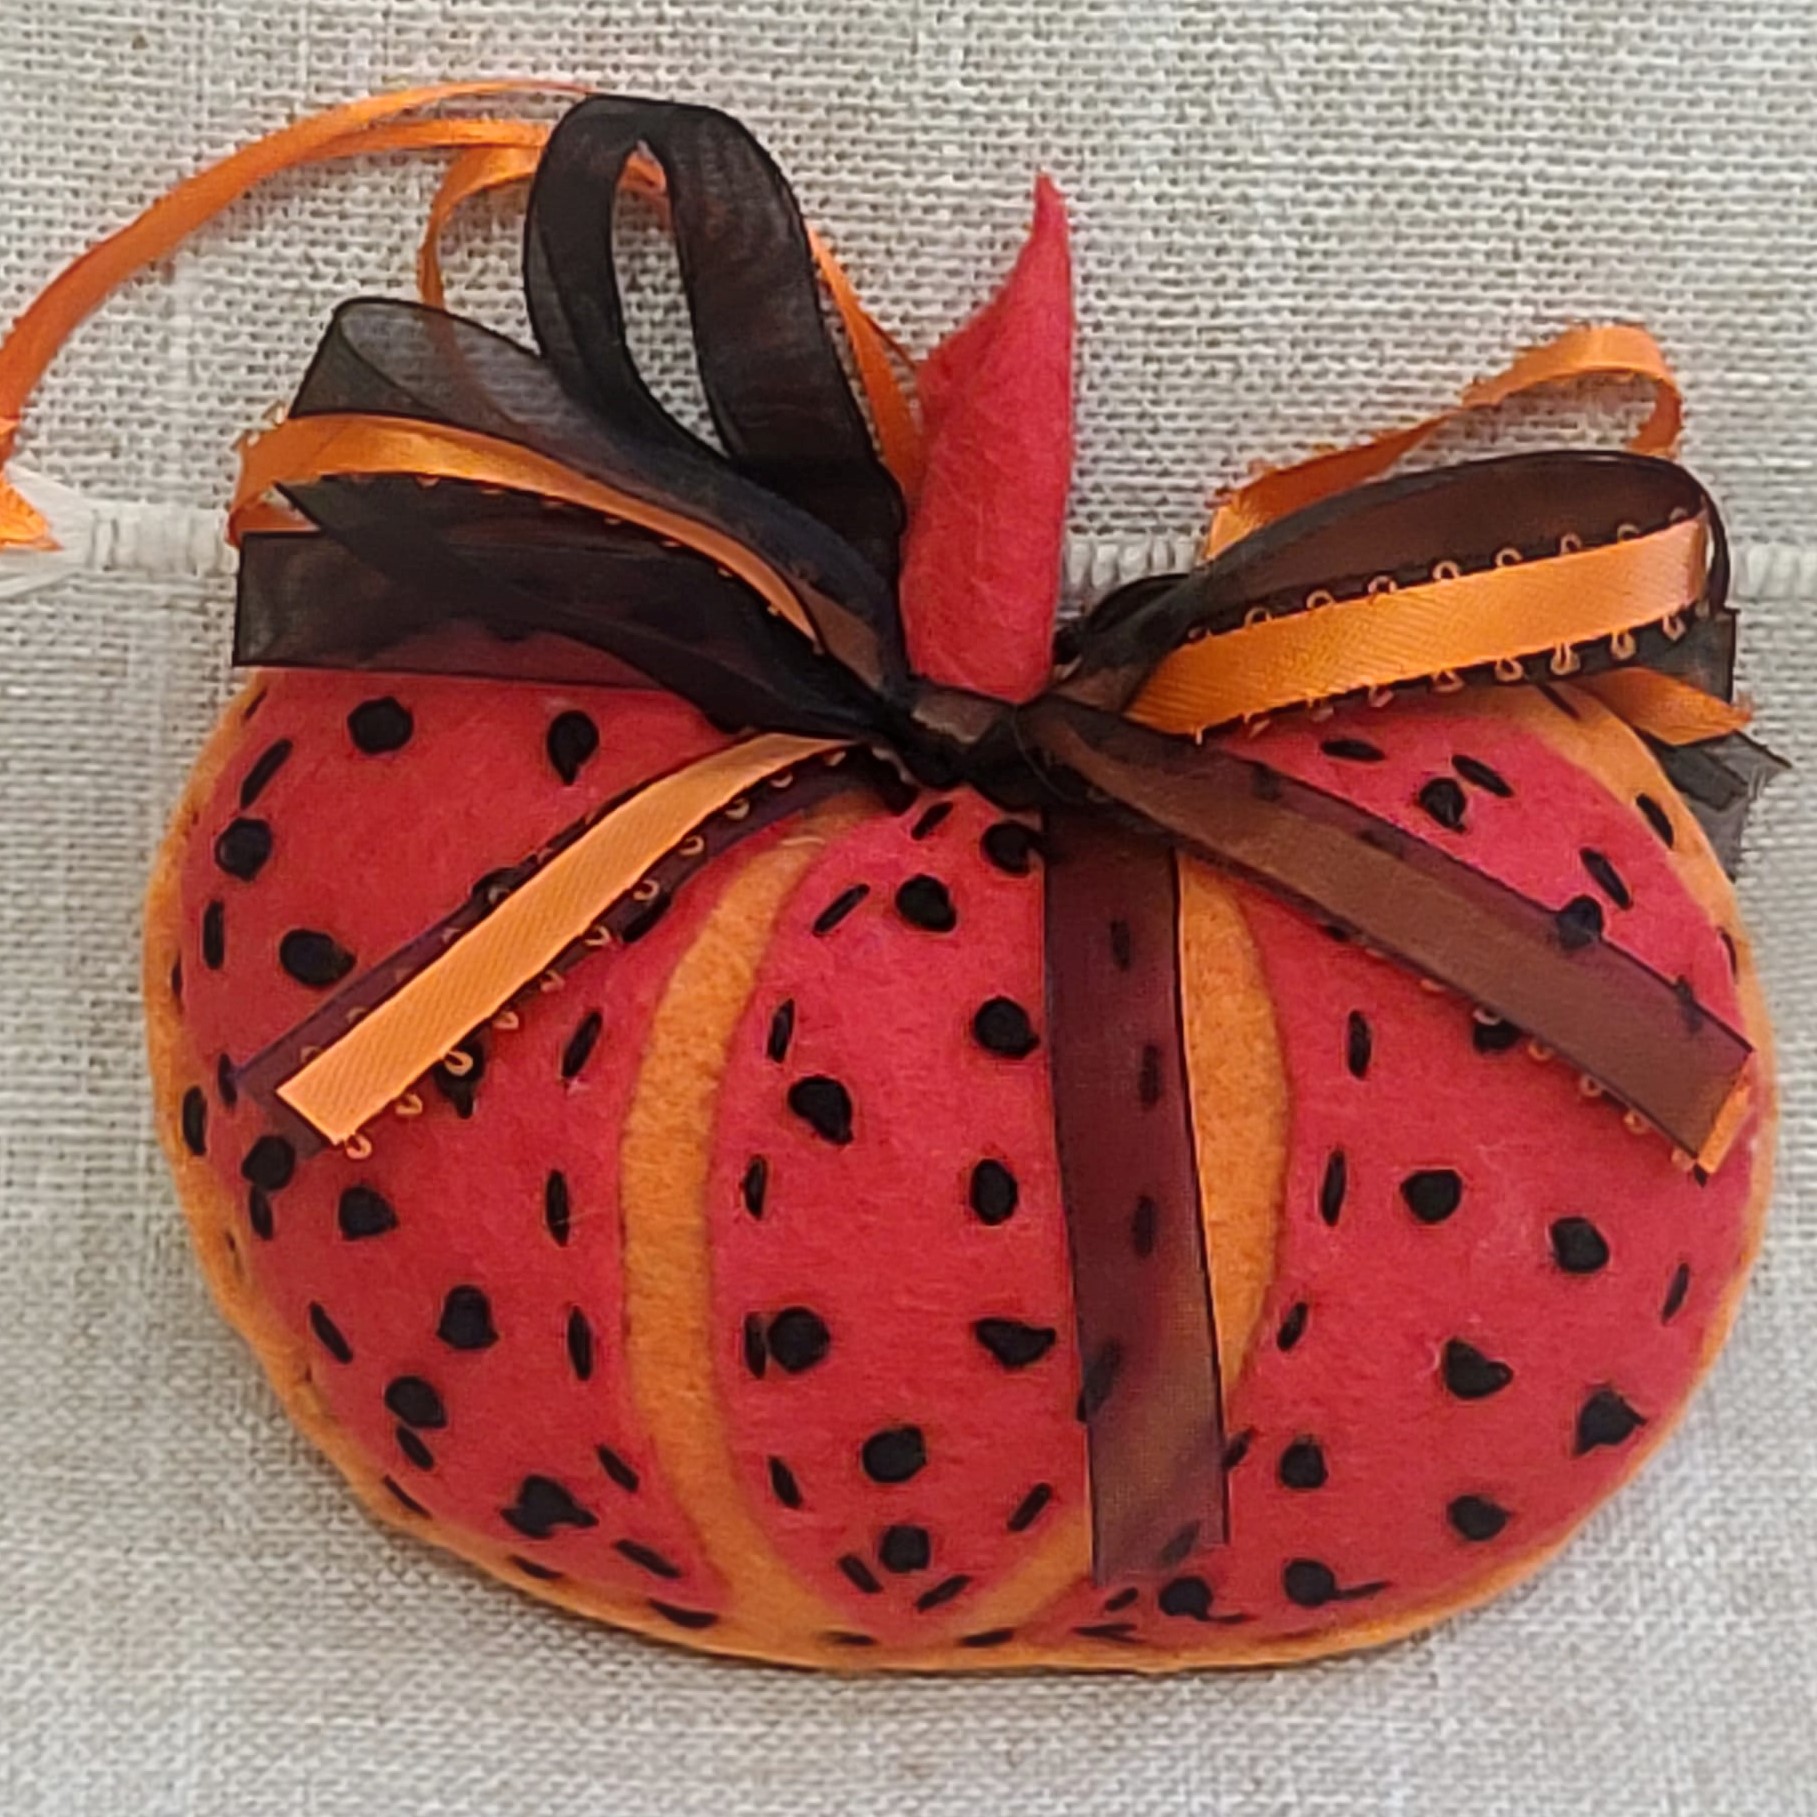 Felt pumpkin ornament - polka dot orange and black - Click Image to Close